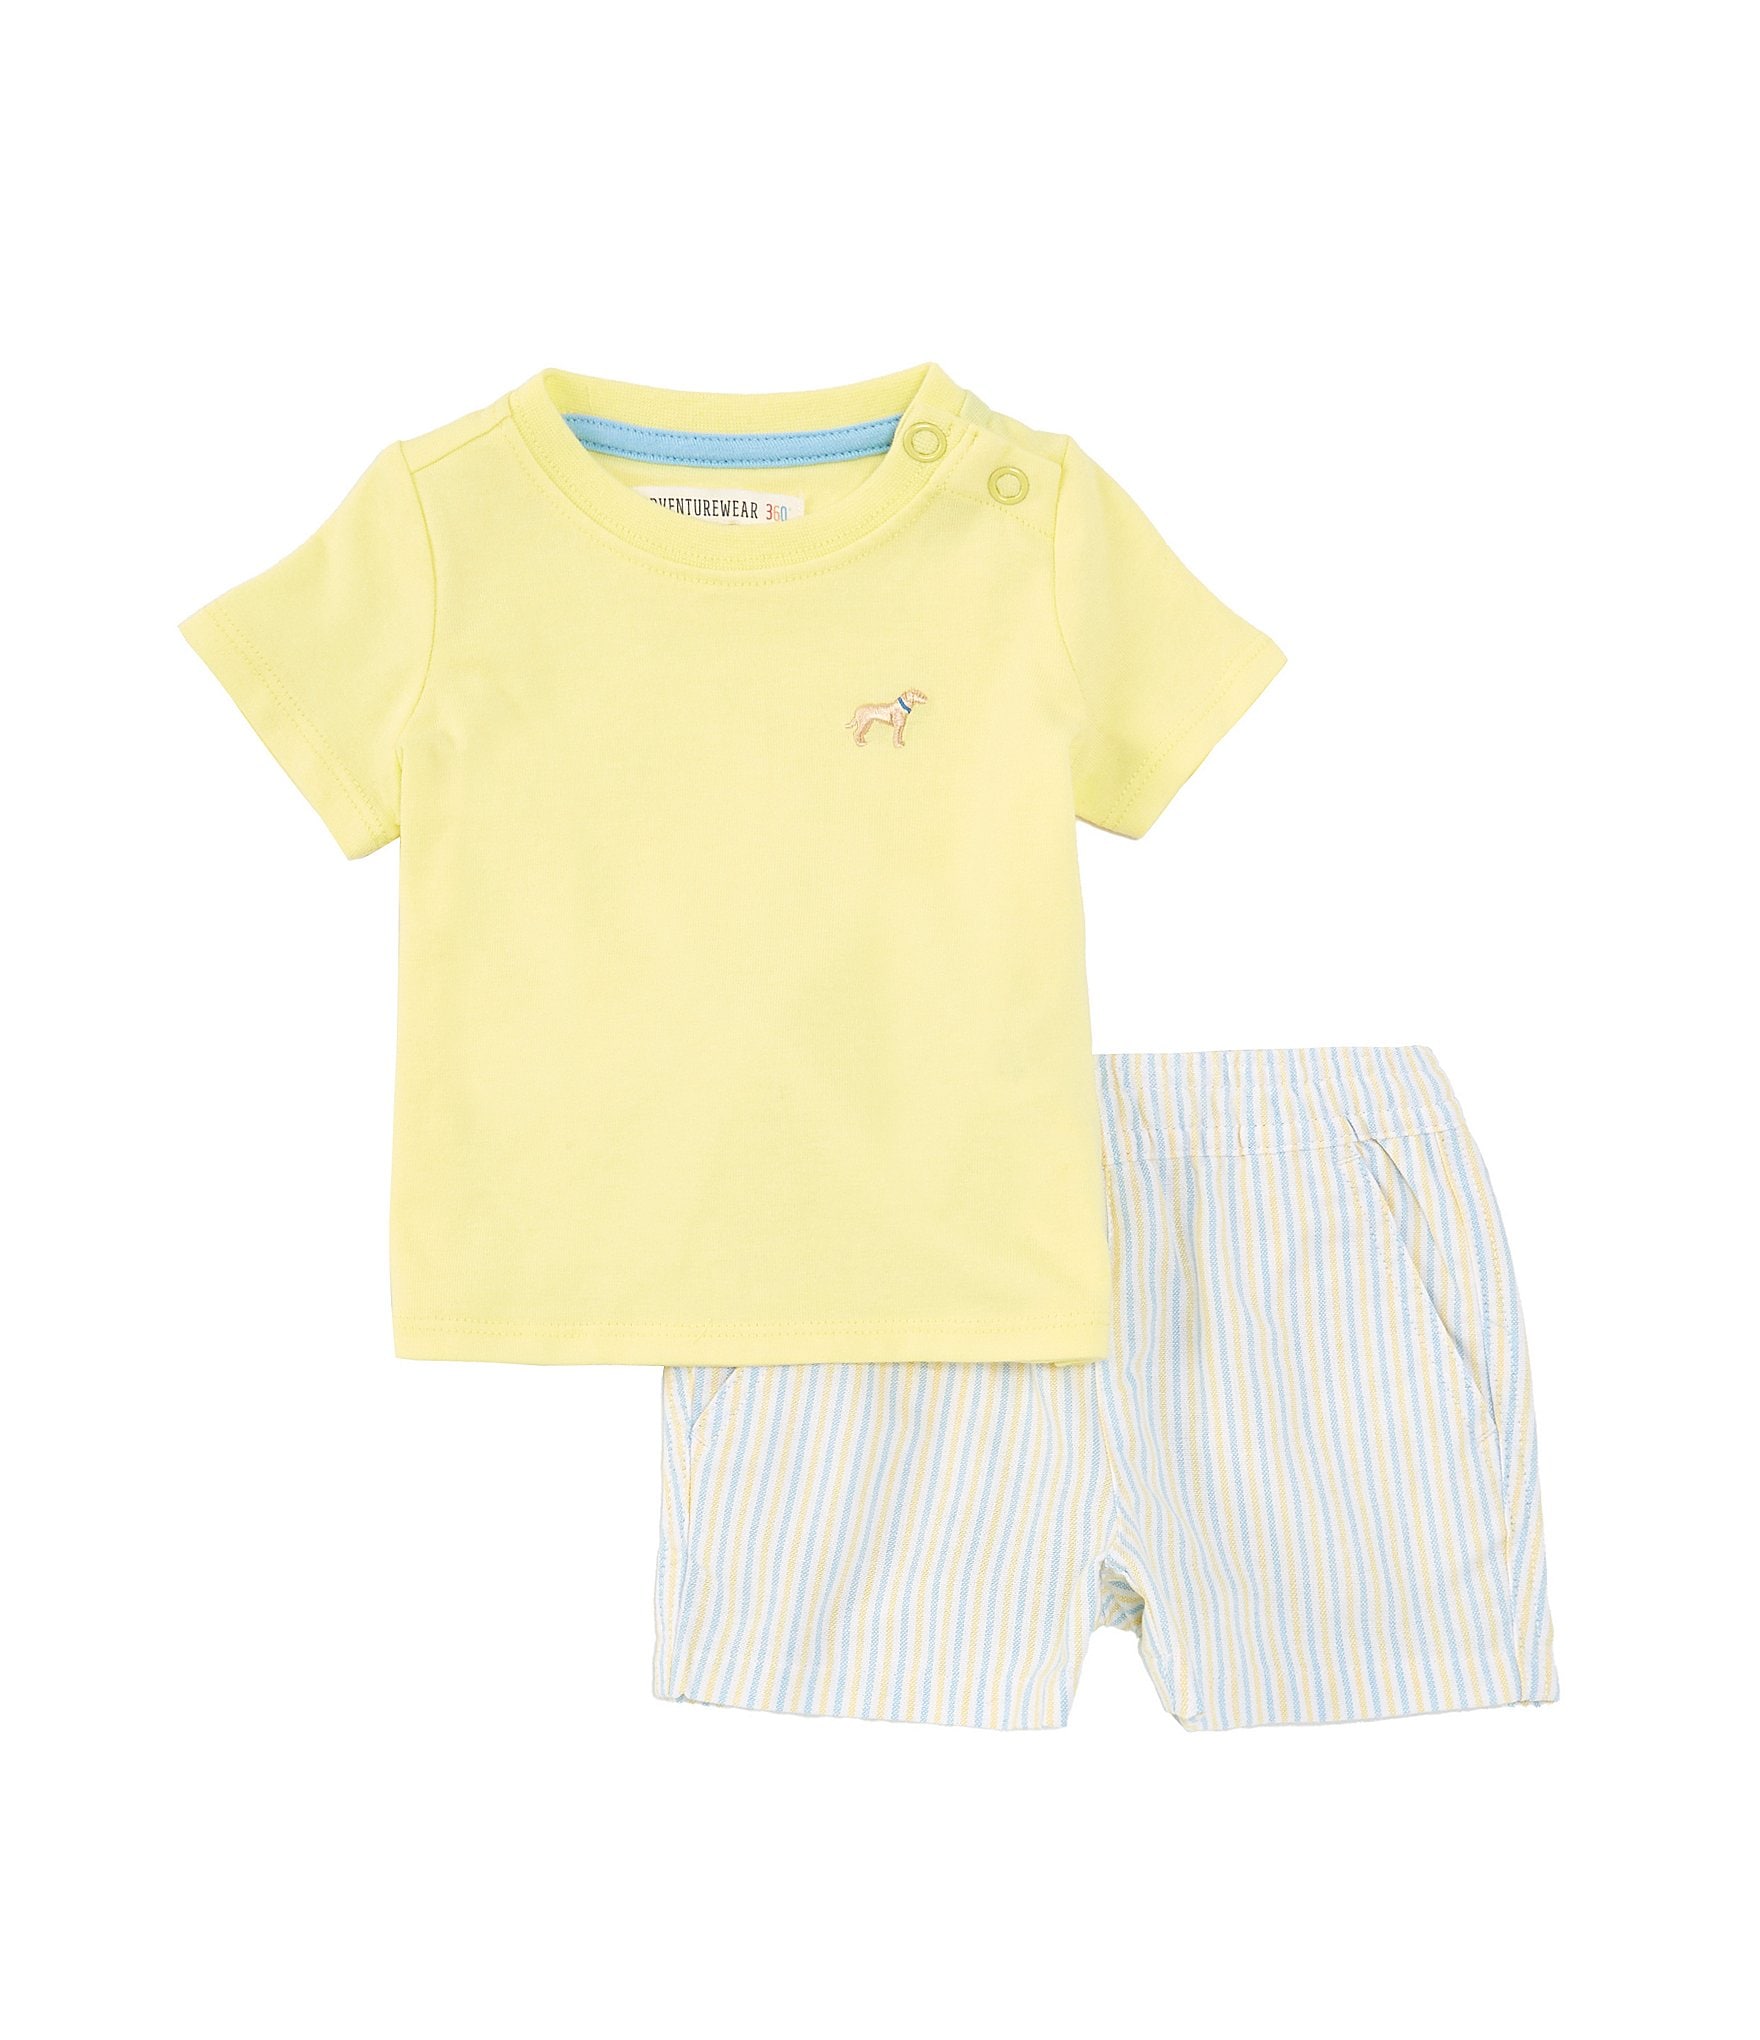 Adventurewear 360 Baby Boy 3-24 Months Round Neck Short Sleeve T-Shirt ...